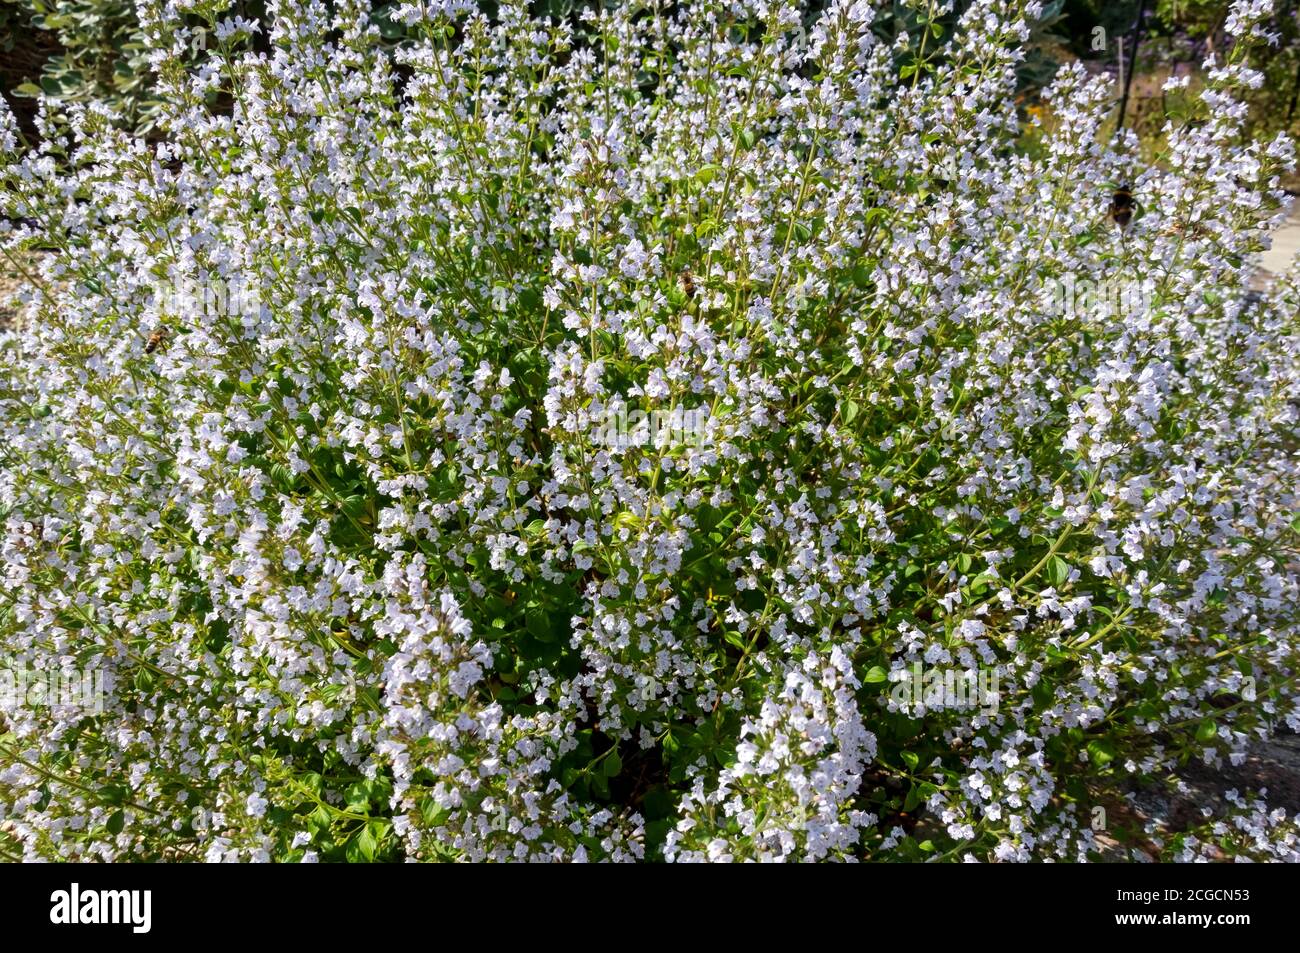 Gros plan sur les produits salés d'hiver (Satureja montana) plantes herbacées fleurs croissant dans une frontière dans le jardin d'été Angleterre Royaume-Uni Grande-Bretagne Banque D'Images